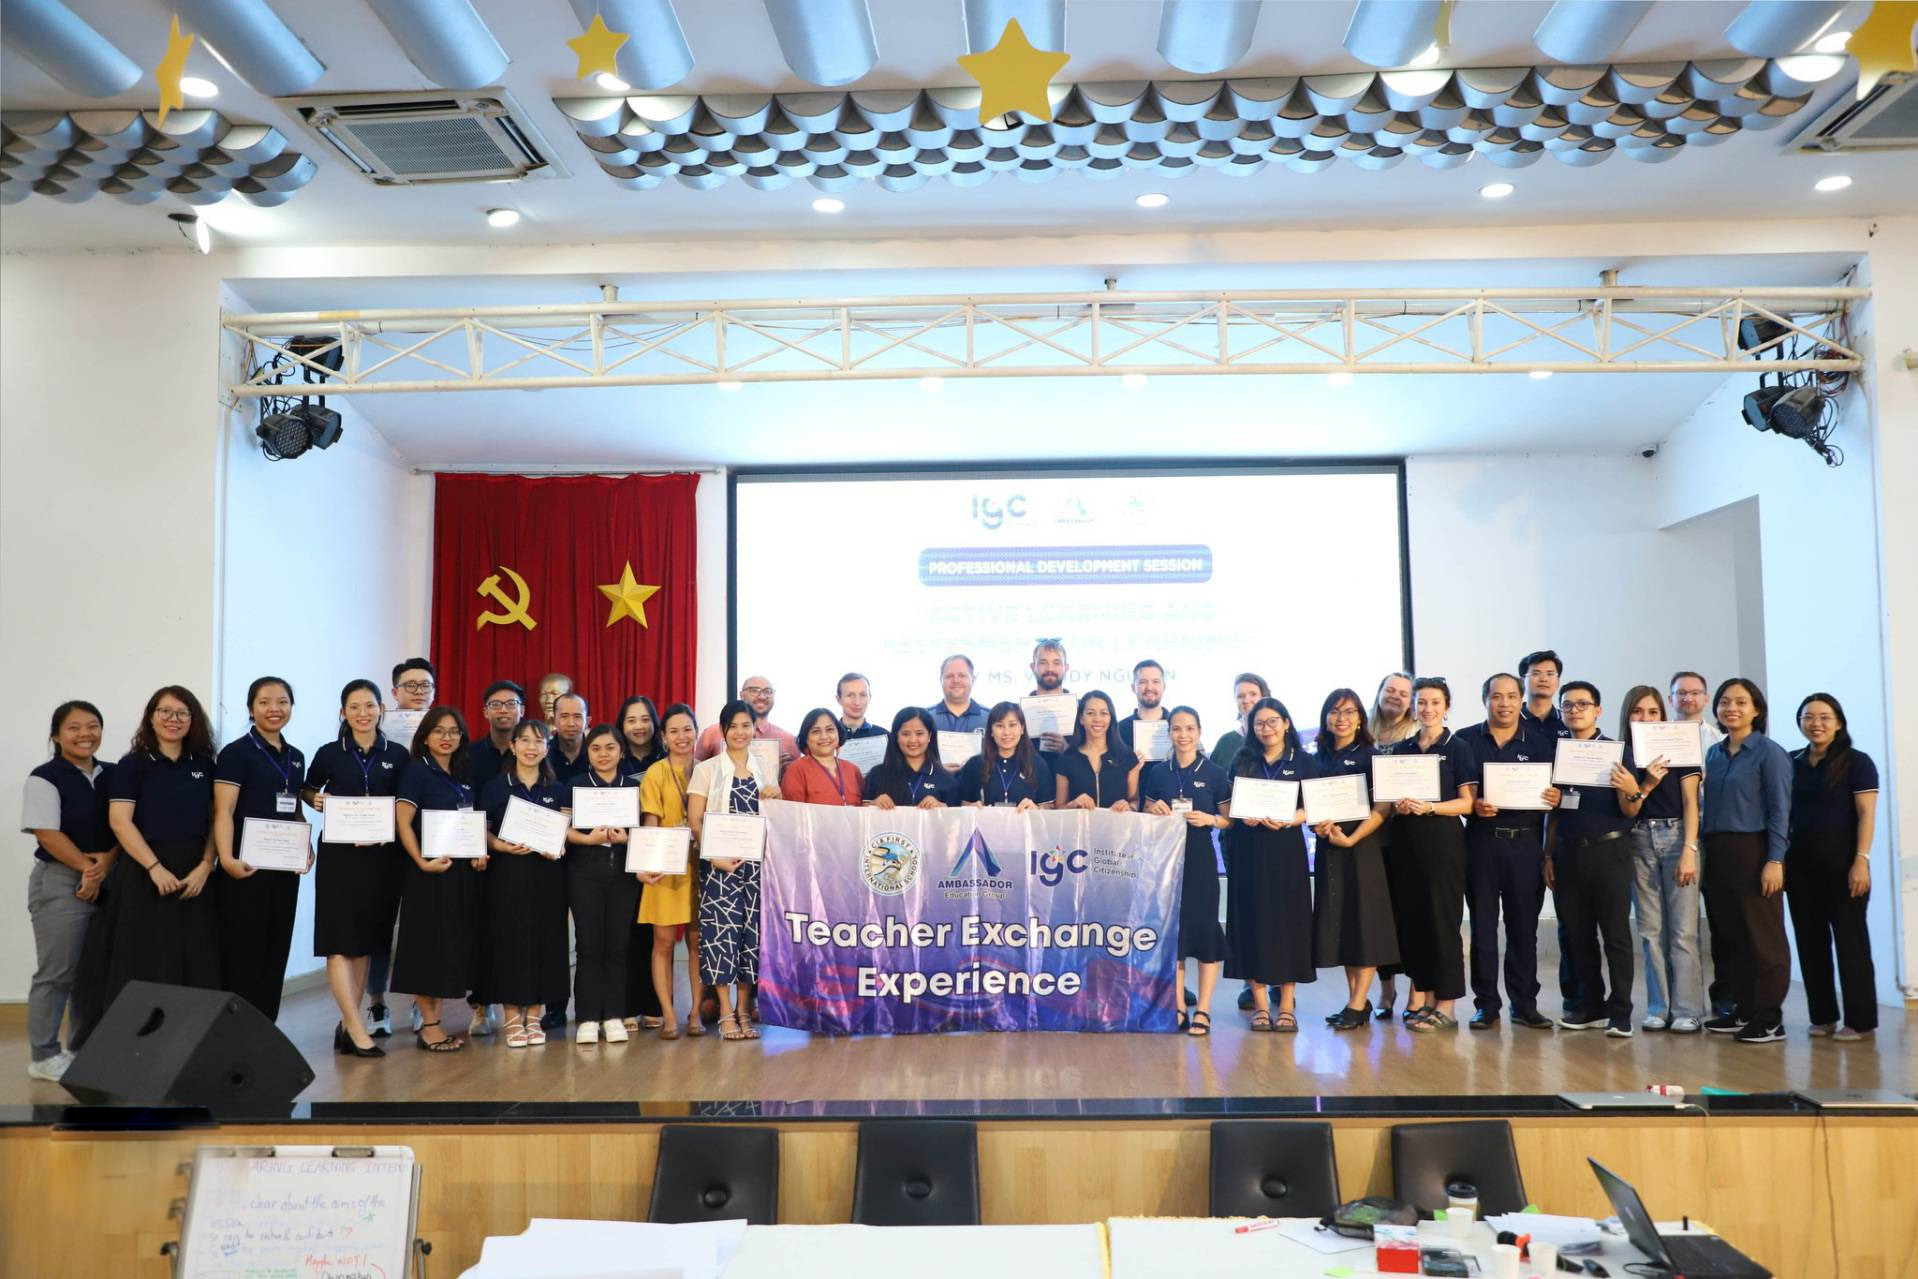 IPS đón đoàn giáo viên IGC (Việt Nam), AEG (Thái Lan) và CIA (Campuchia) đến tham gia chương trình giao lưu, trao đổi kinh nghiệm